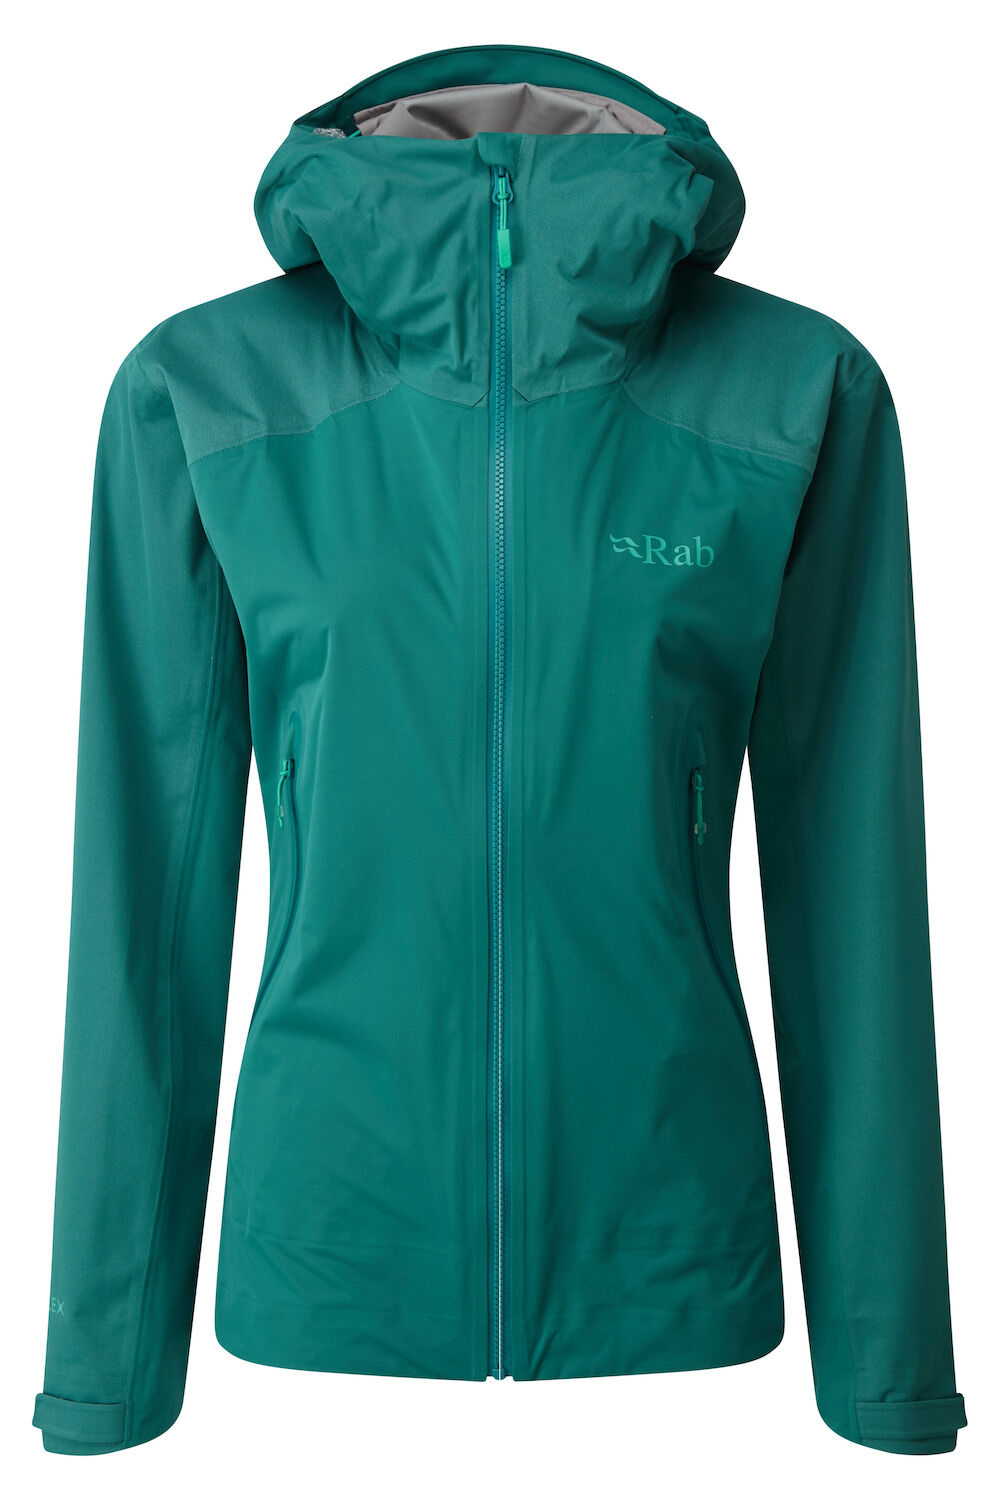 Rab Kinetic Alpine Jacket - Hardshell jacket - Women's